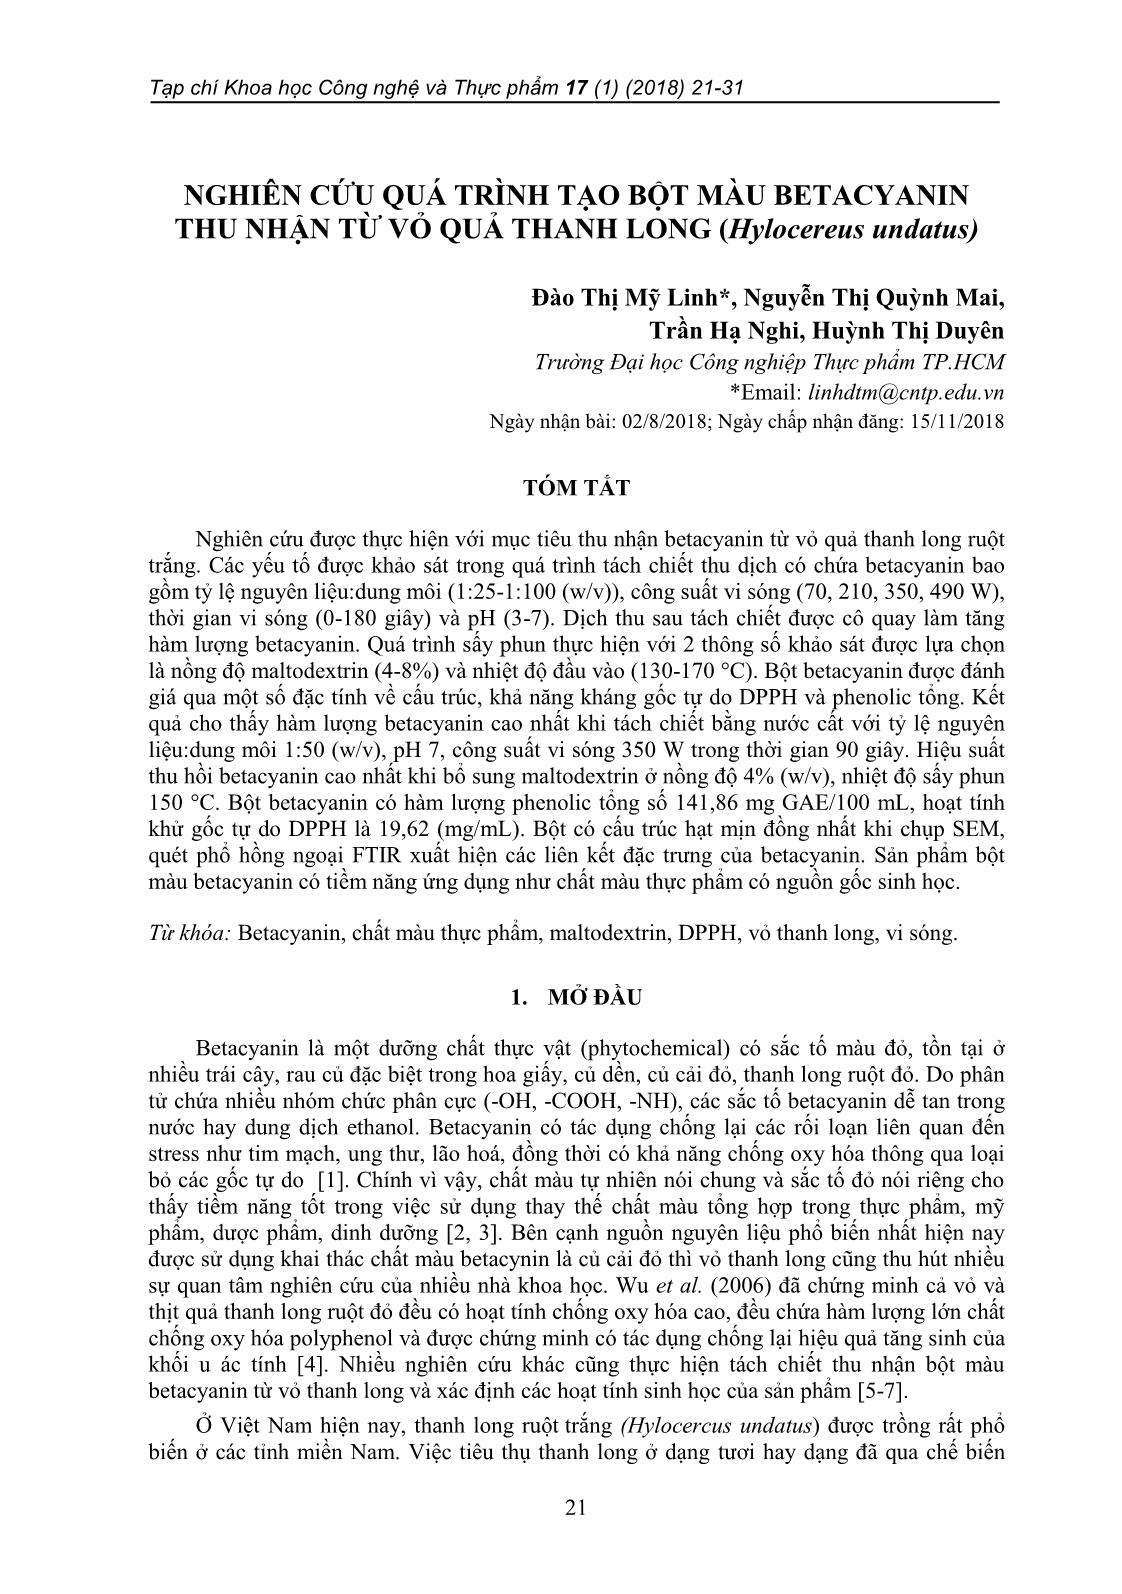 Nghiên cứu quá trình tạo bột màu betacyanin thu nhận từ vỏ quả thanh long (hylocereus undatus) trang 1